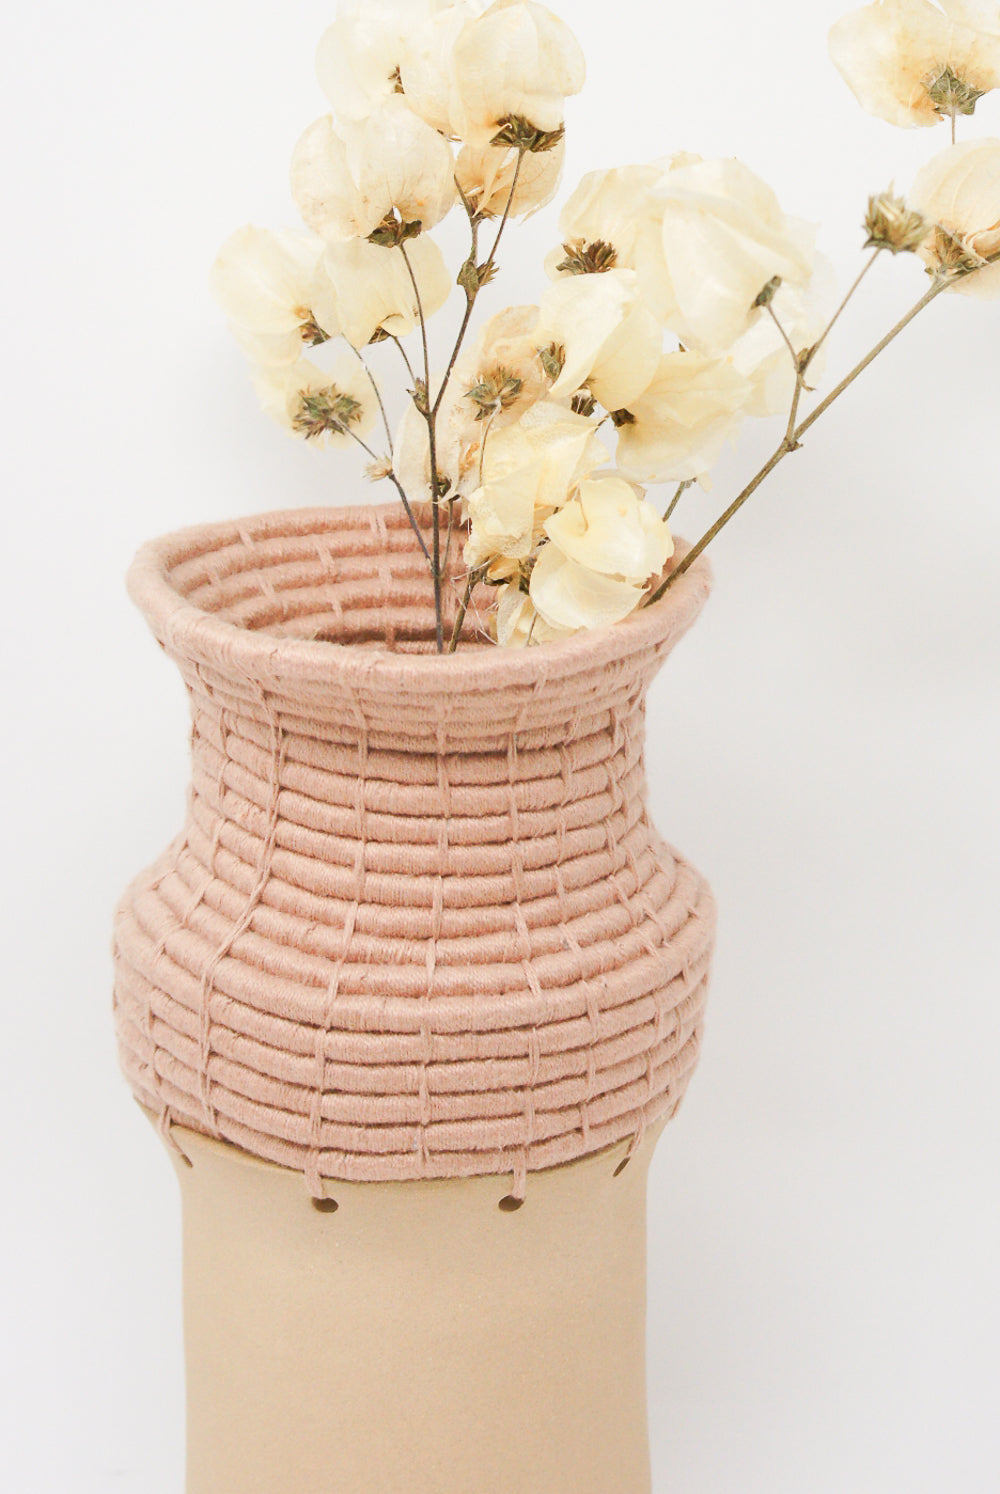 Karen Tinney Vase #731 in Natural/Blush woven detail